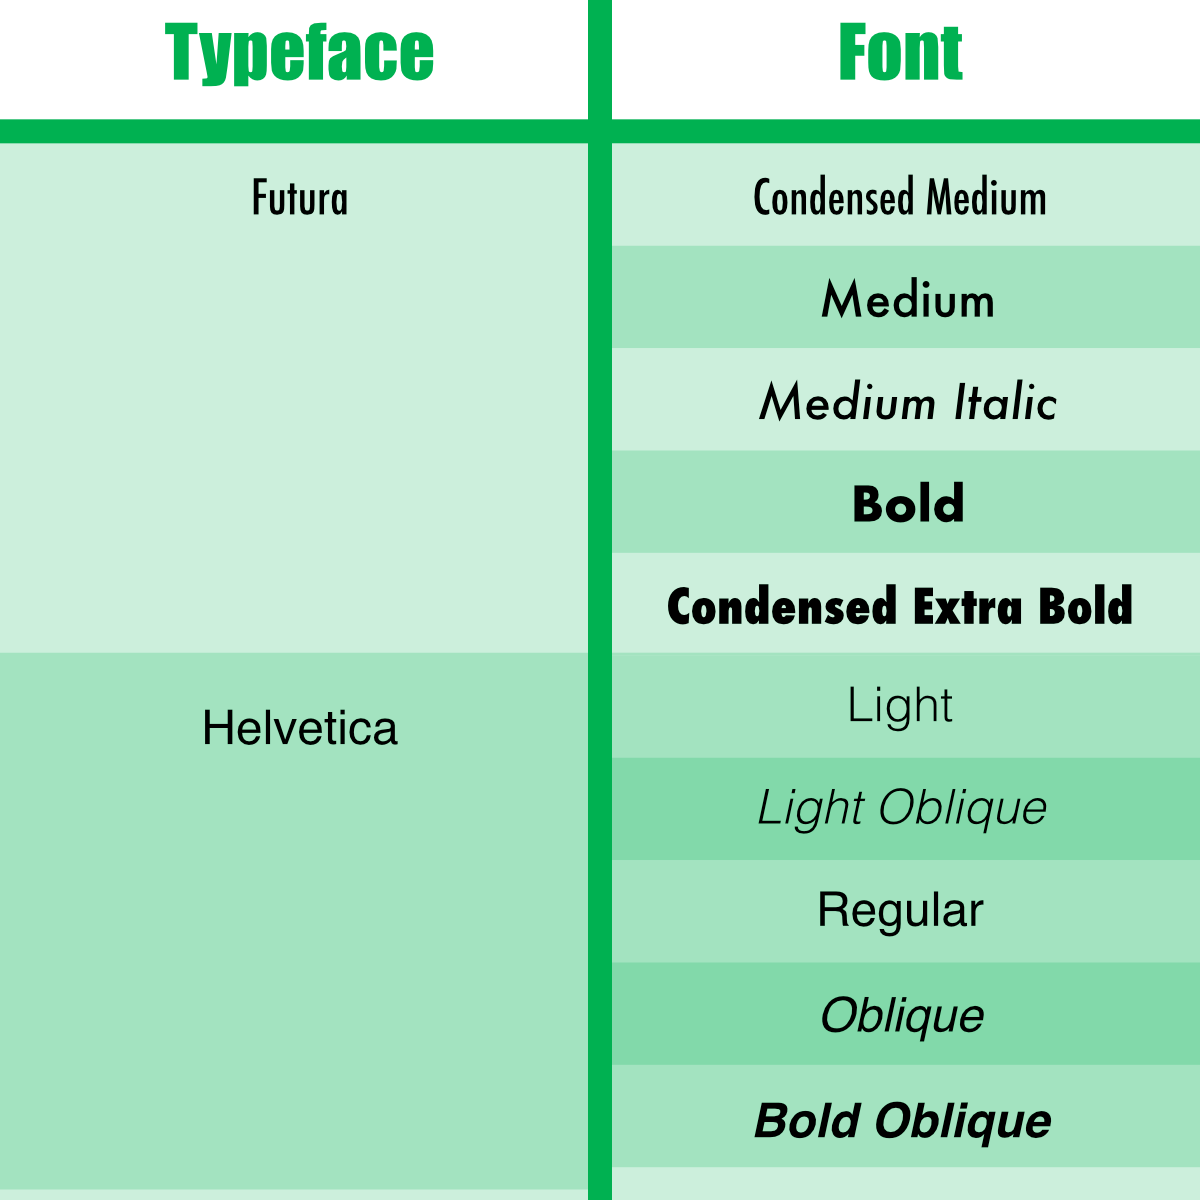 typeface-vs-font